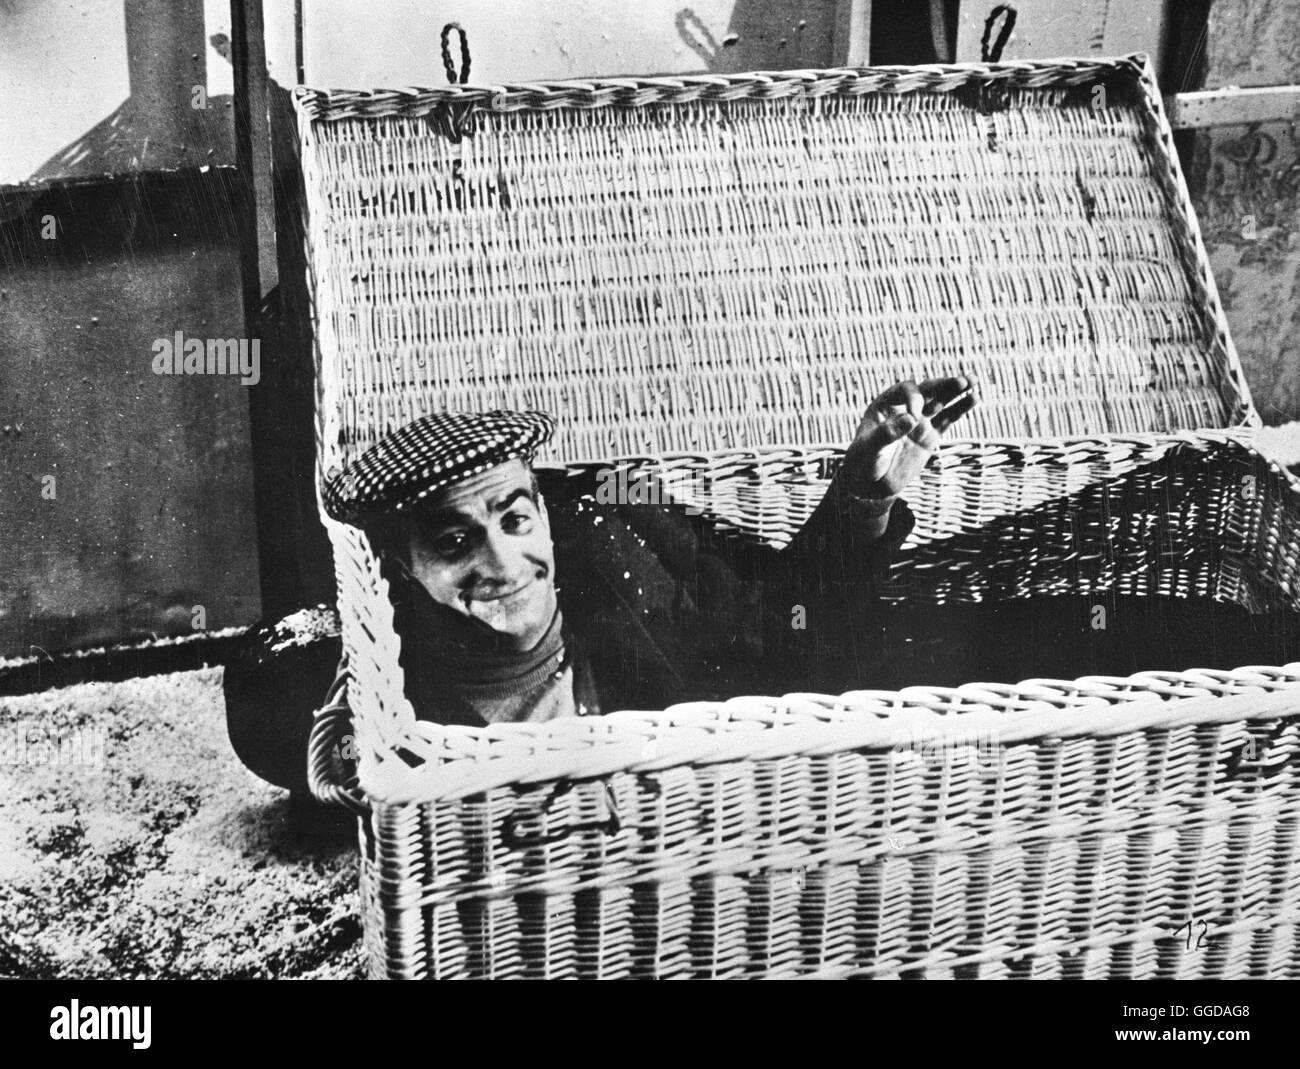 RADIESCHEN VON UNTEN / des pissenlits par la racine Frankreich 1963 / Georges Lautner Bild : LOUIS DE FUNES als Jockey Jack Regie : Georges Lautner aka. Des pissenlits par la racine Banque D'Images